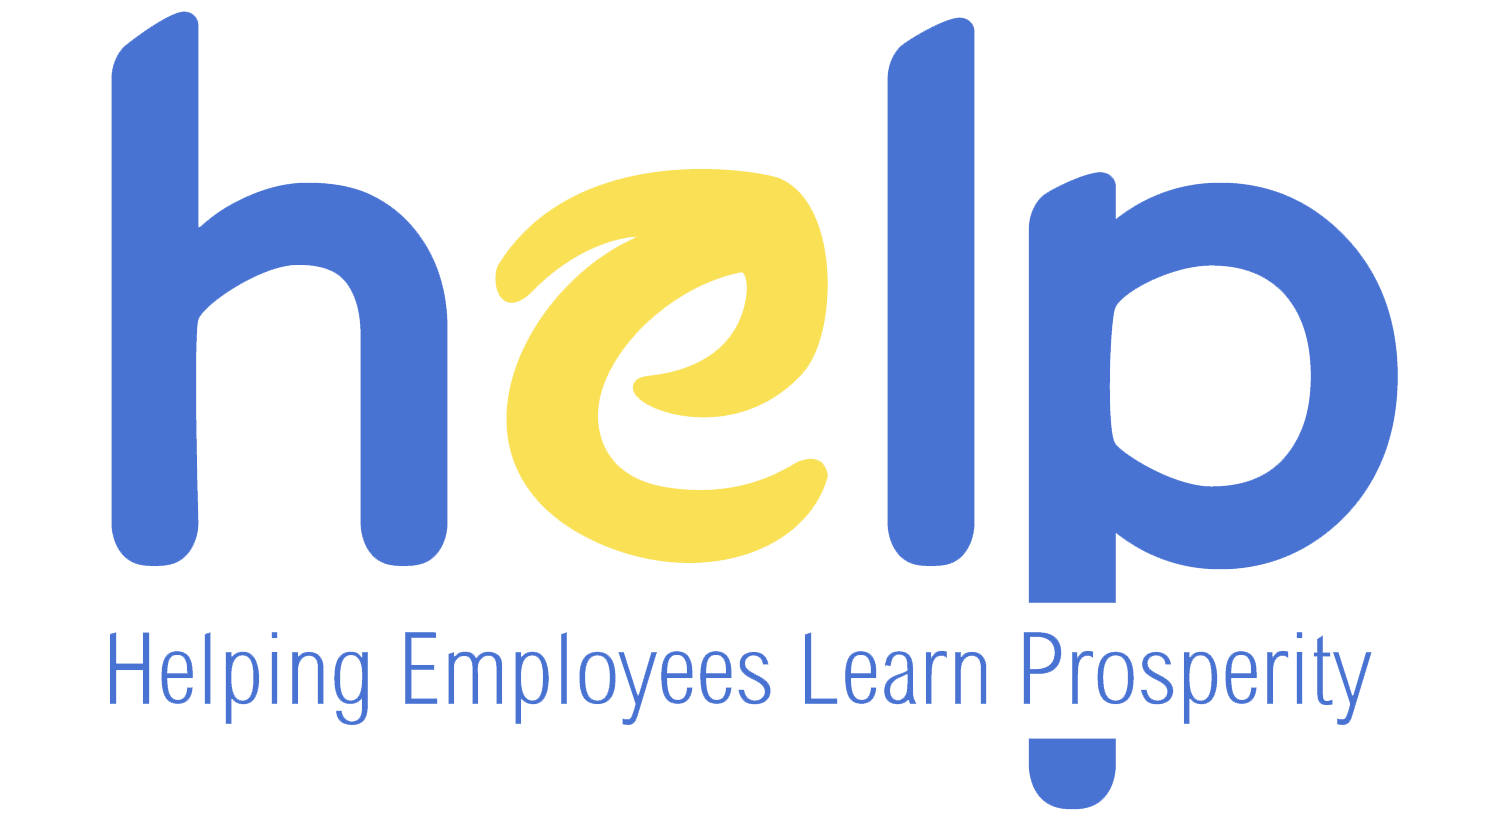 HELP - Helping Employees Learn Prosperity